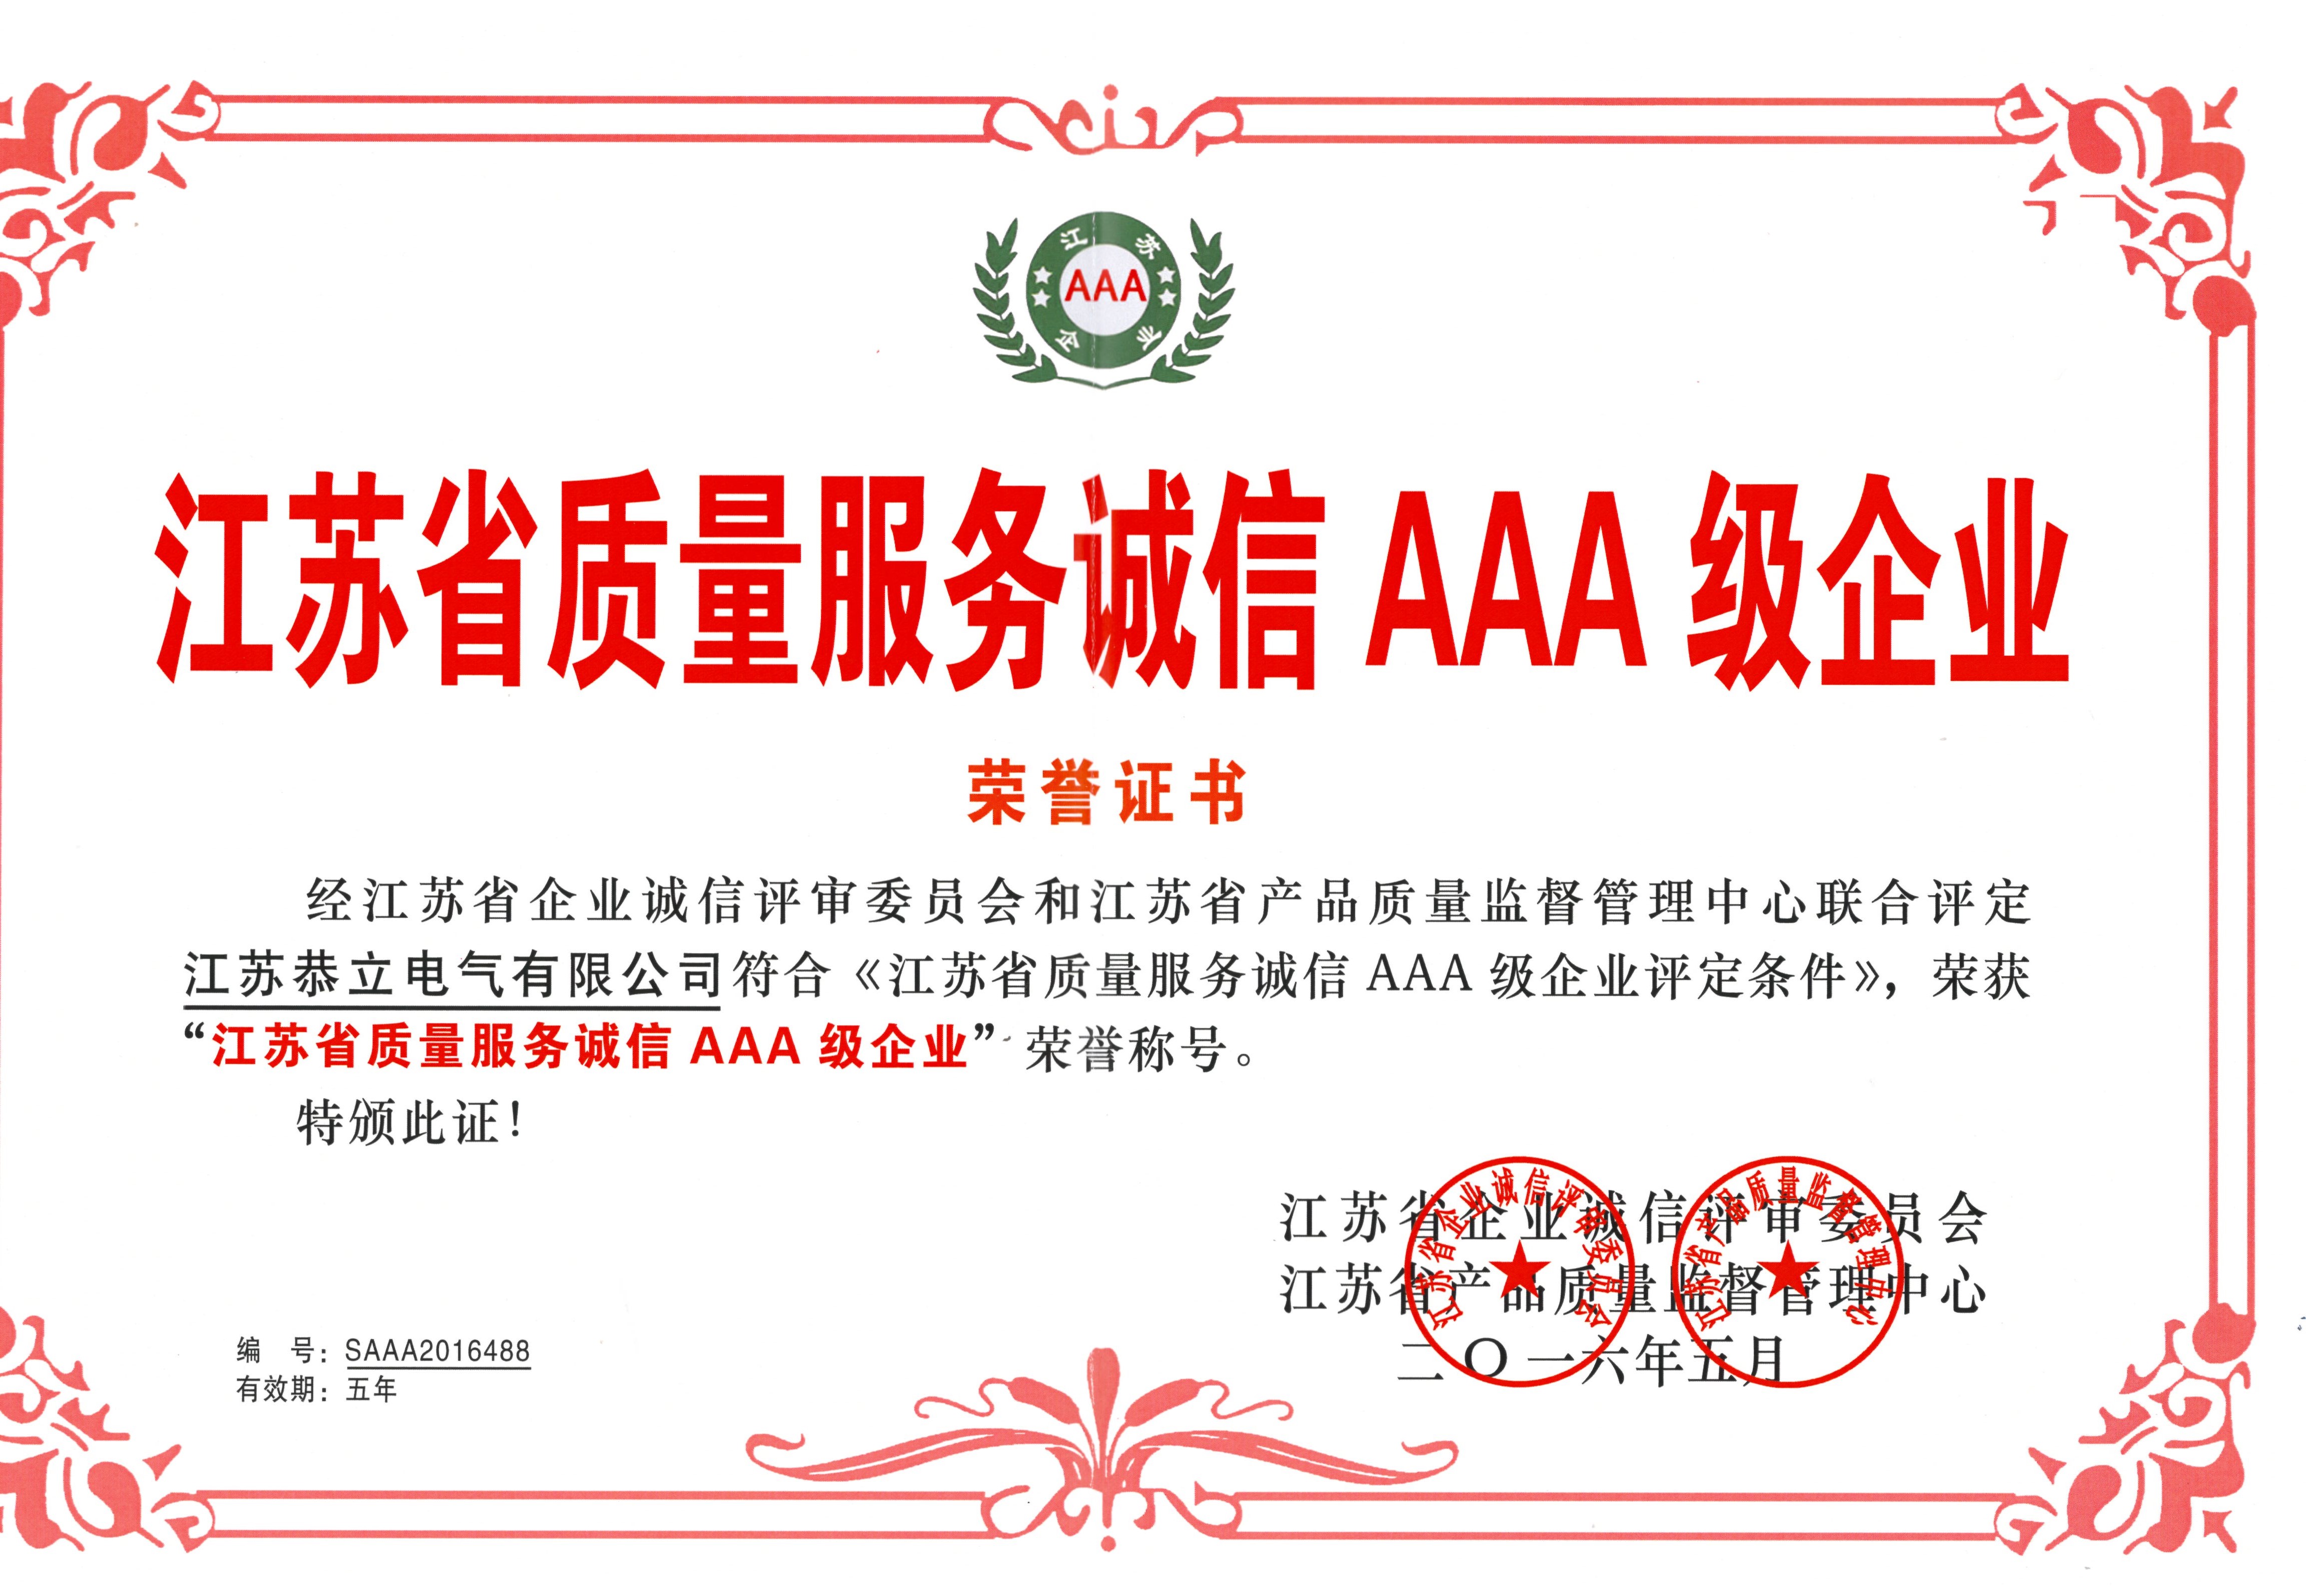 江苏省质量服务诚信AAA级企业荣誉证书